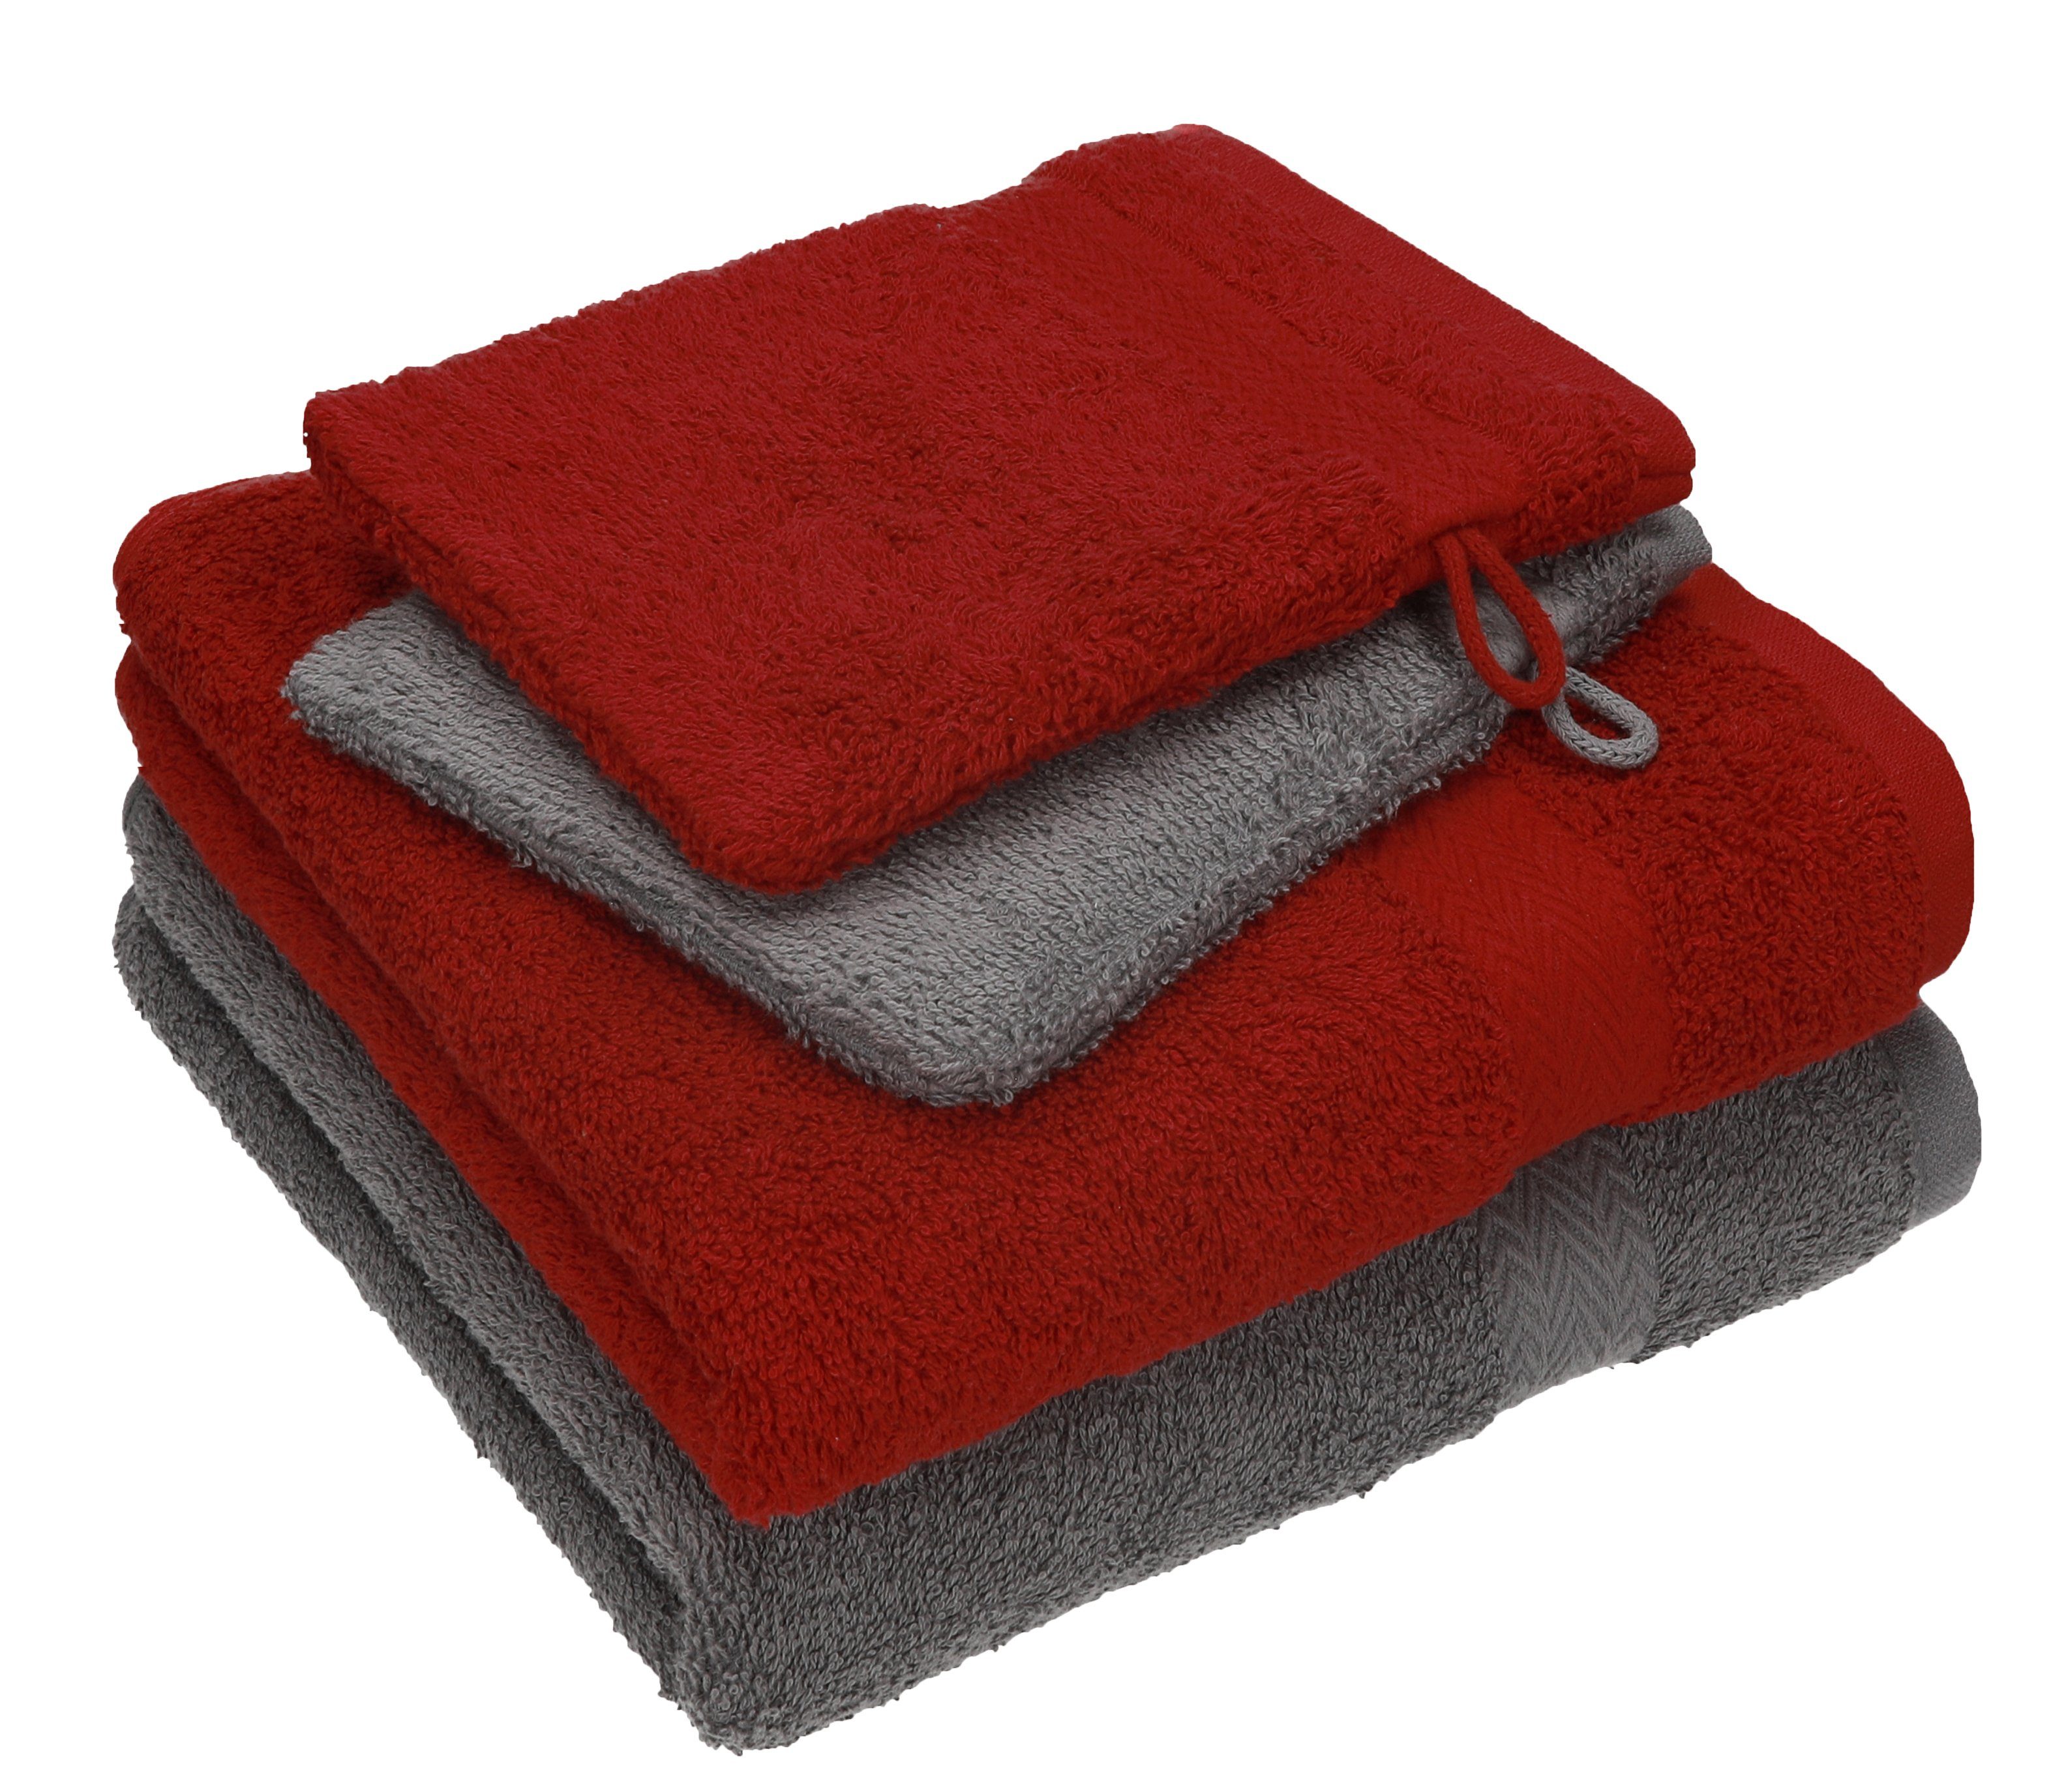 Betz Handtuch Set 4 TLG. Handtuch Set Happy Pack 100% Baumwolle 2 Handtücher 2 Waschhandschuhe, 100% Baumwolle anthrazit grau - dunkelrot